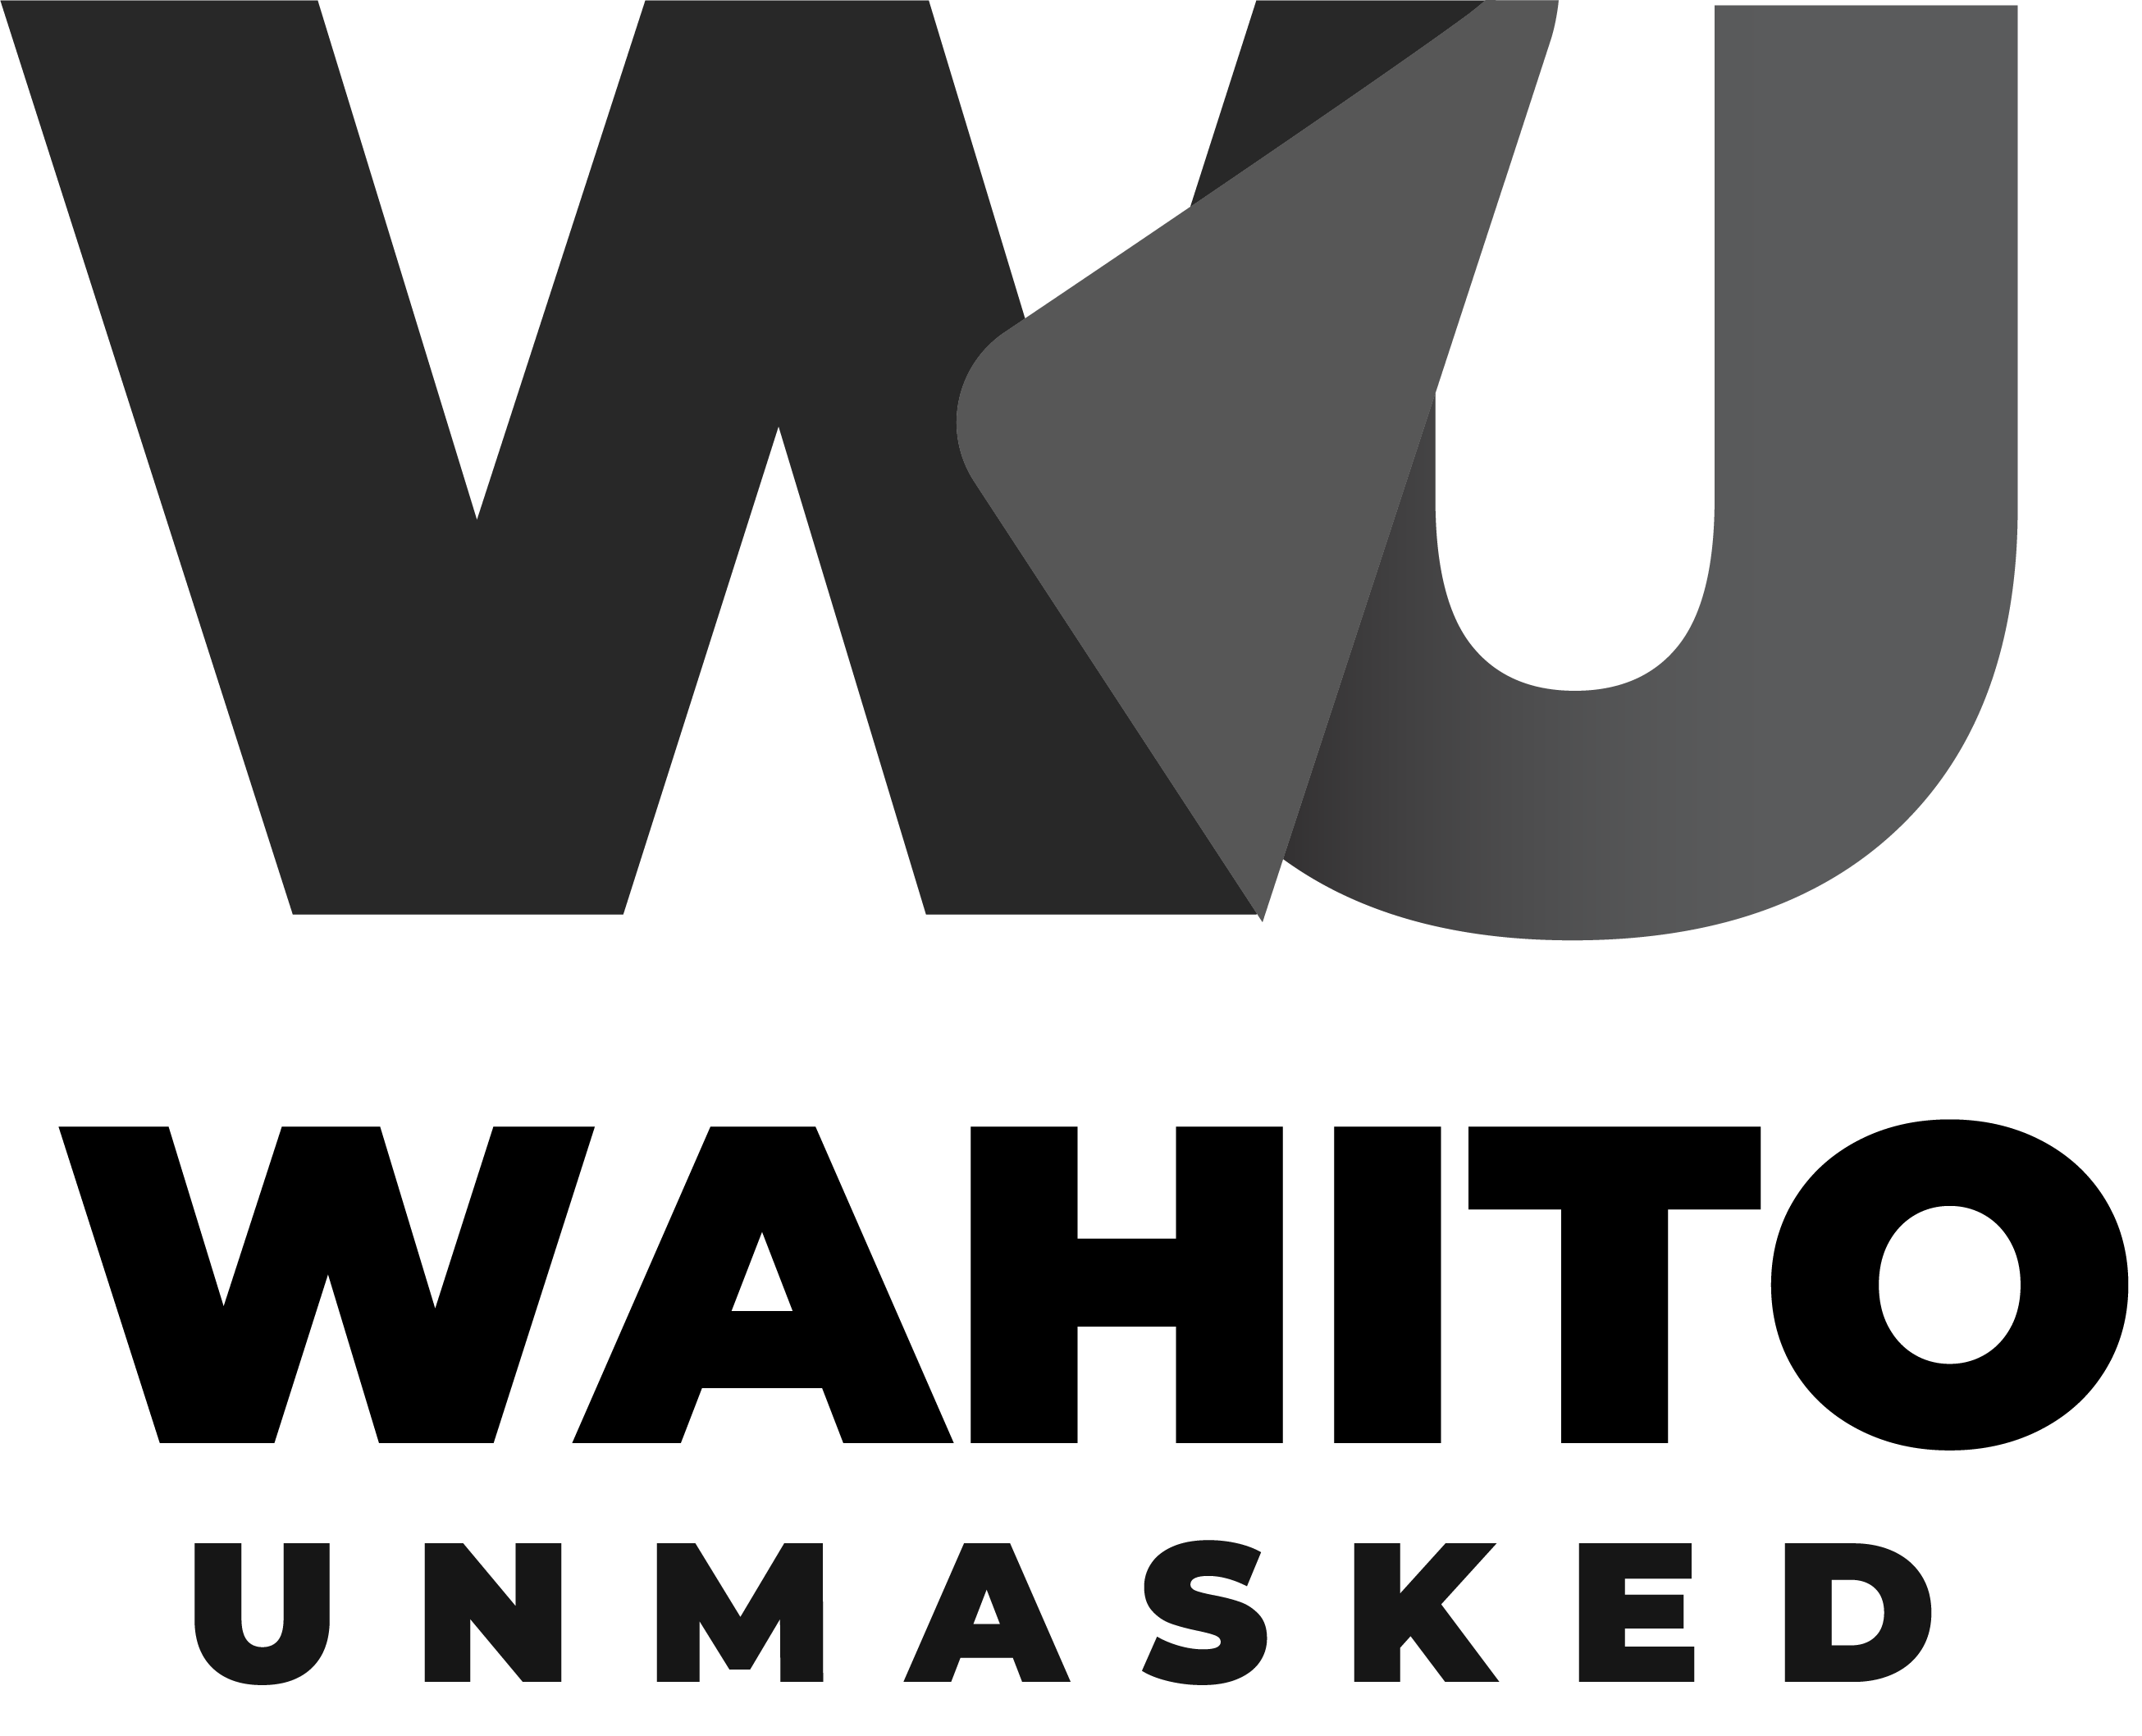 Wahito Unmasked